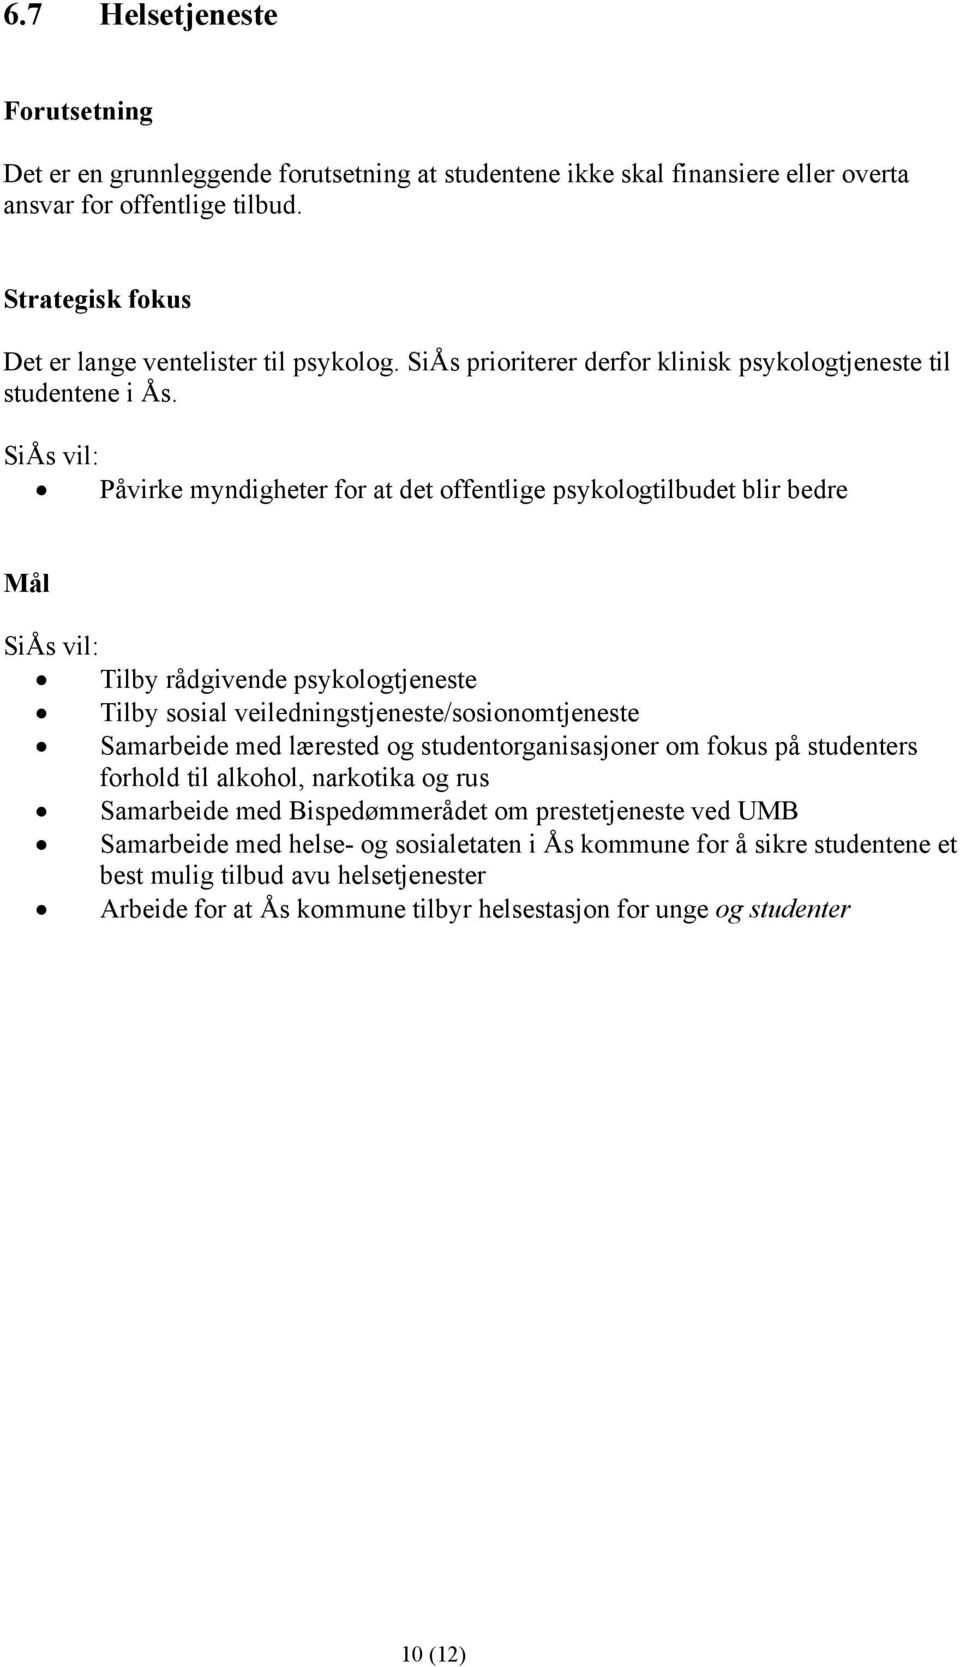 Påvirke myndigheter for at det offentlige psykologtilbudet blir bedre Mål Tilby rådgivende psykologtjeneste Tilby sosial veiledningstjeneste/sosionomtjeneste Samarbeide med lærested og